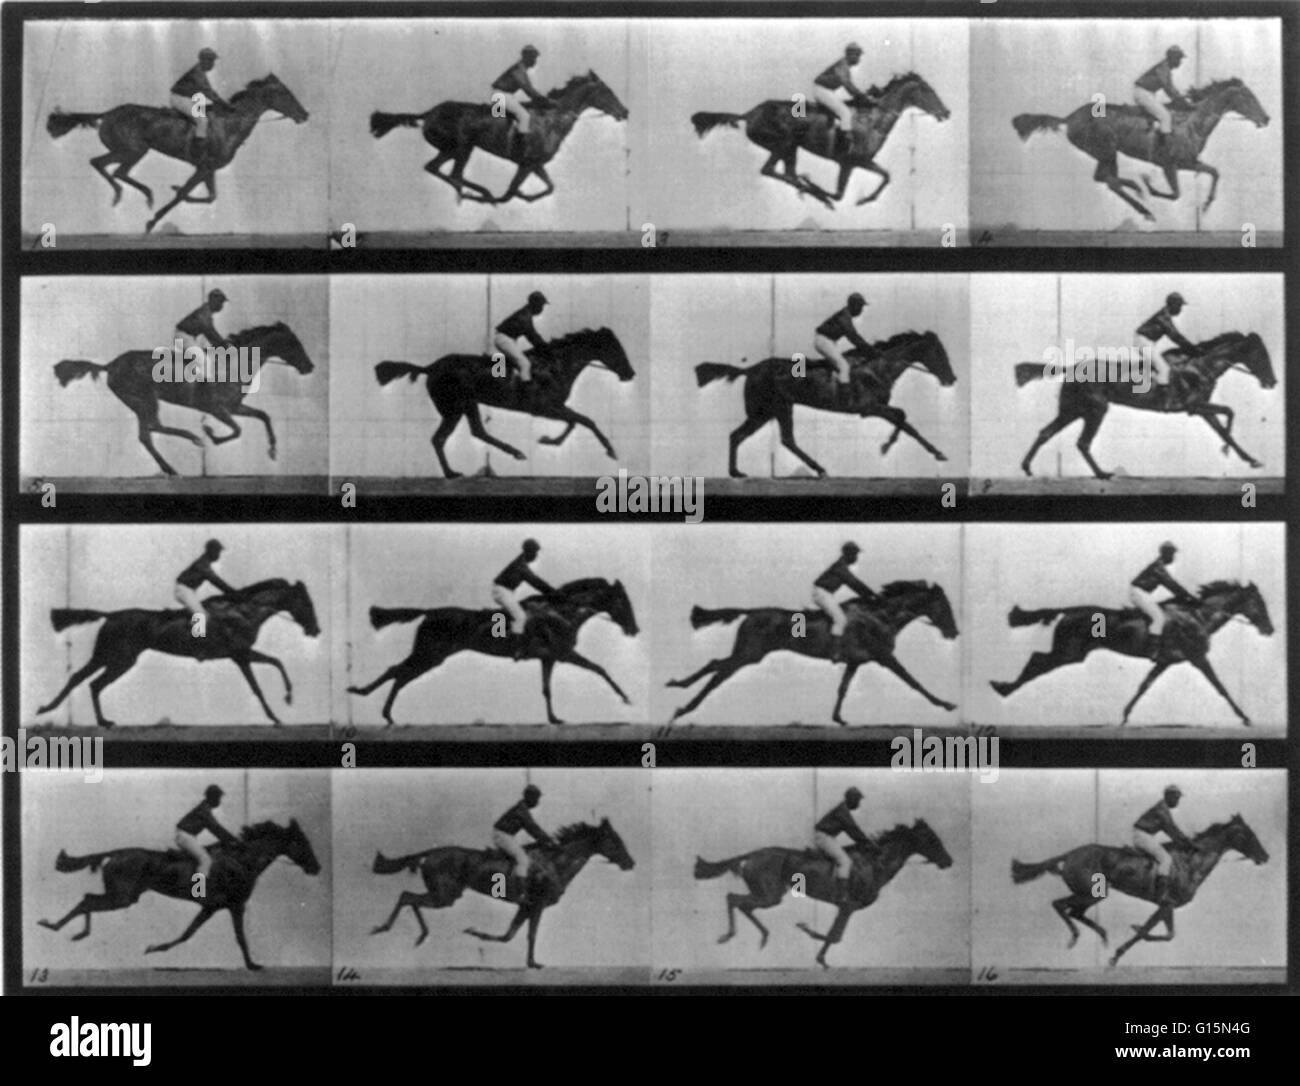 Muybridge Locomozione animale, delle corse ippiche al galoppo, 1887. Locomozione animale, 16 trame di Annie delle corse ippiche G. al galoppo. James Eadweard Muybridge (9 aprile 1830 - 8 Maggio 1904) era un fotografo inglese importante per il suo lavoro pionieristico nel prigioniero fotografico Foto Stock